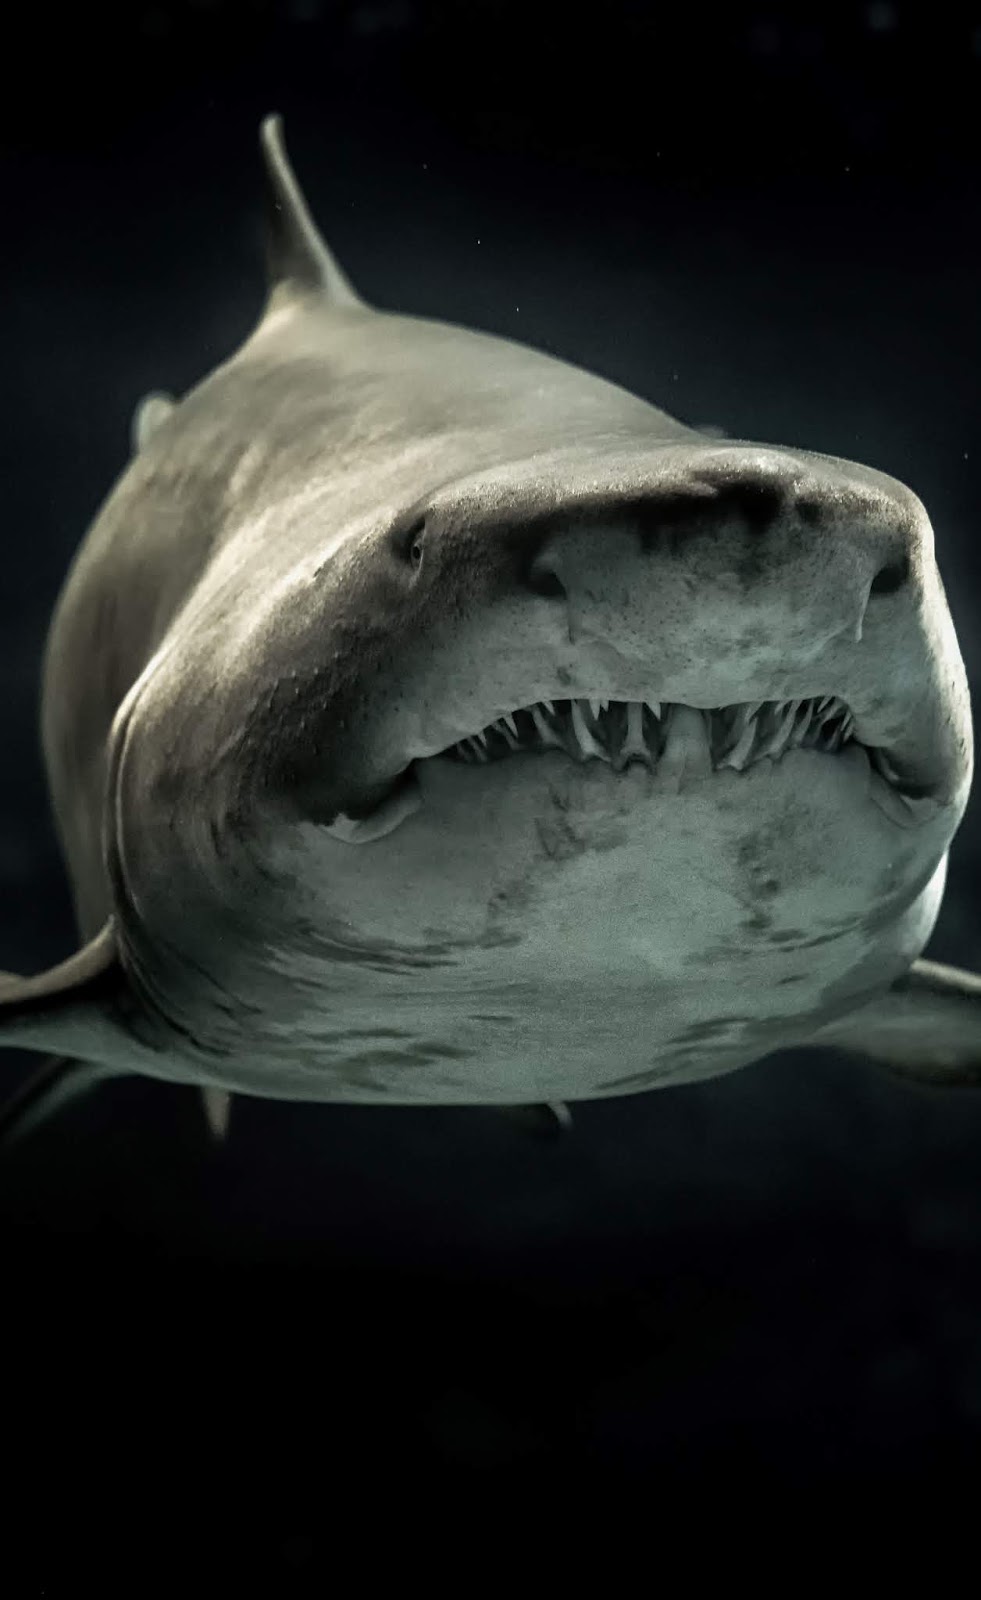 A shark with menacing teeth.